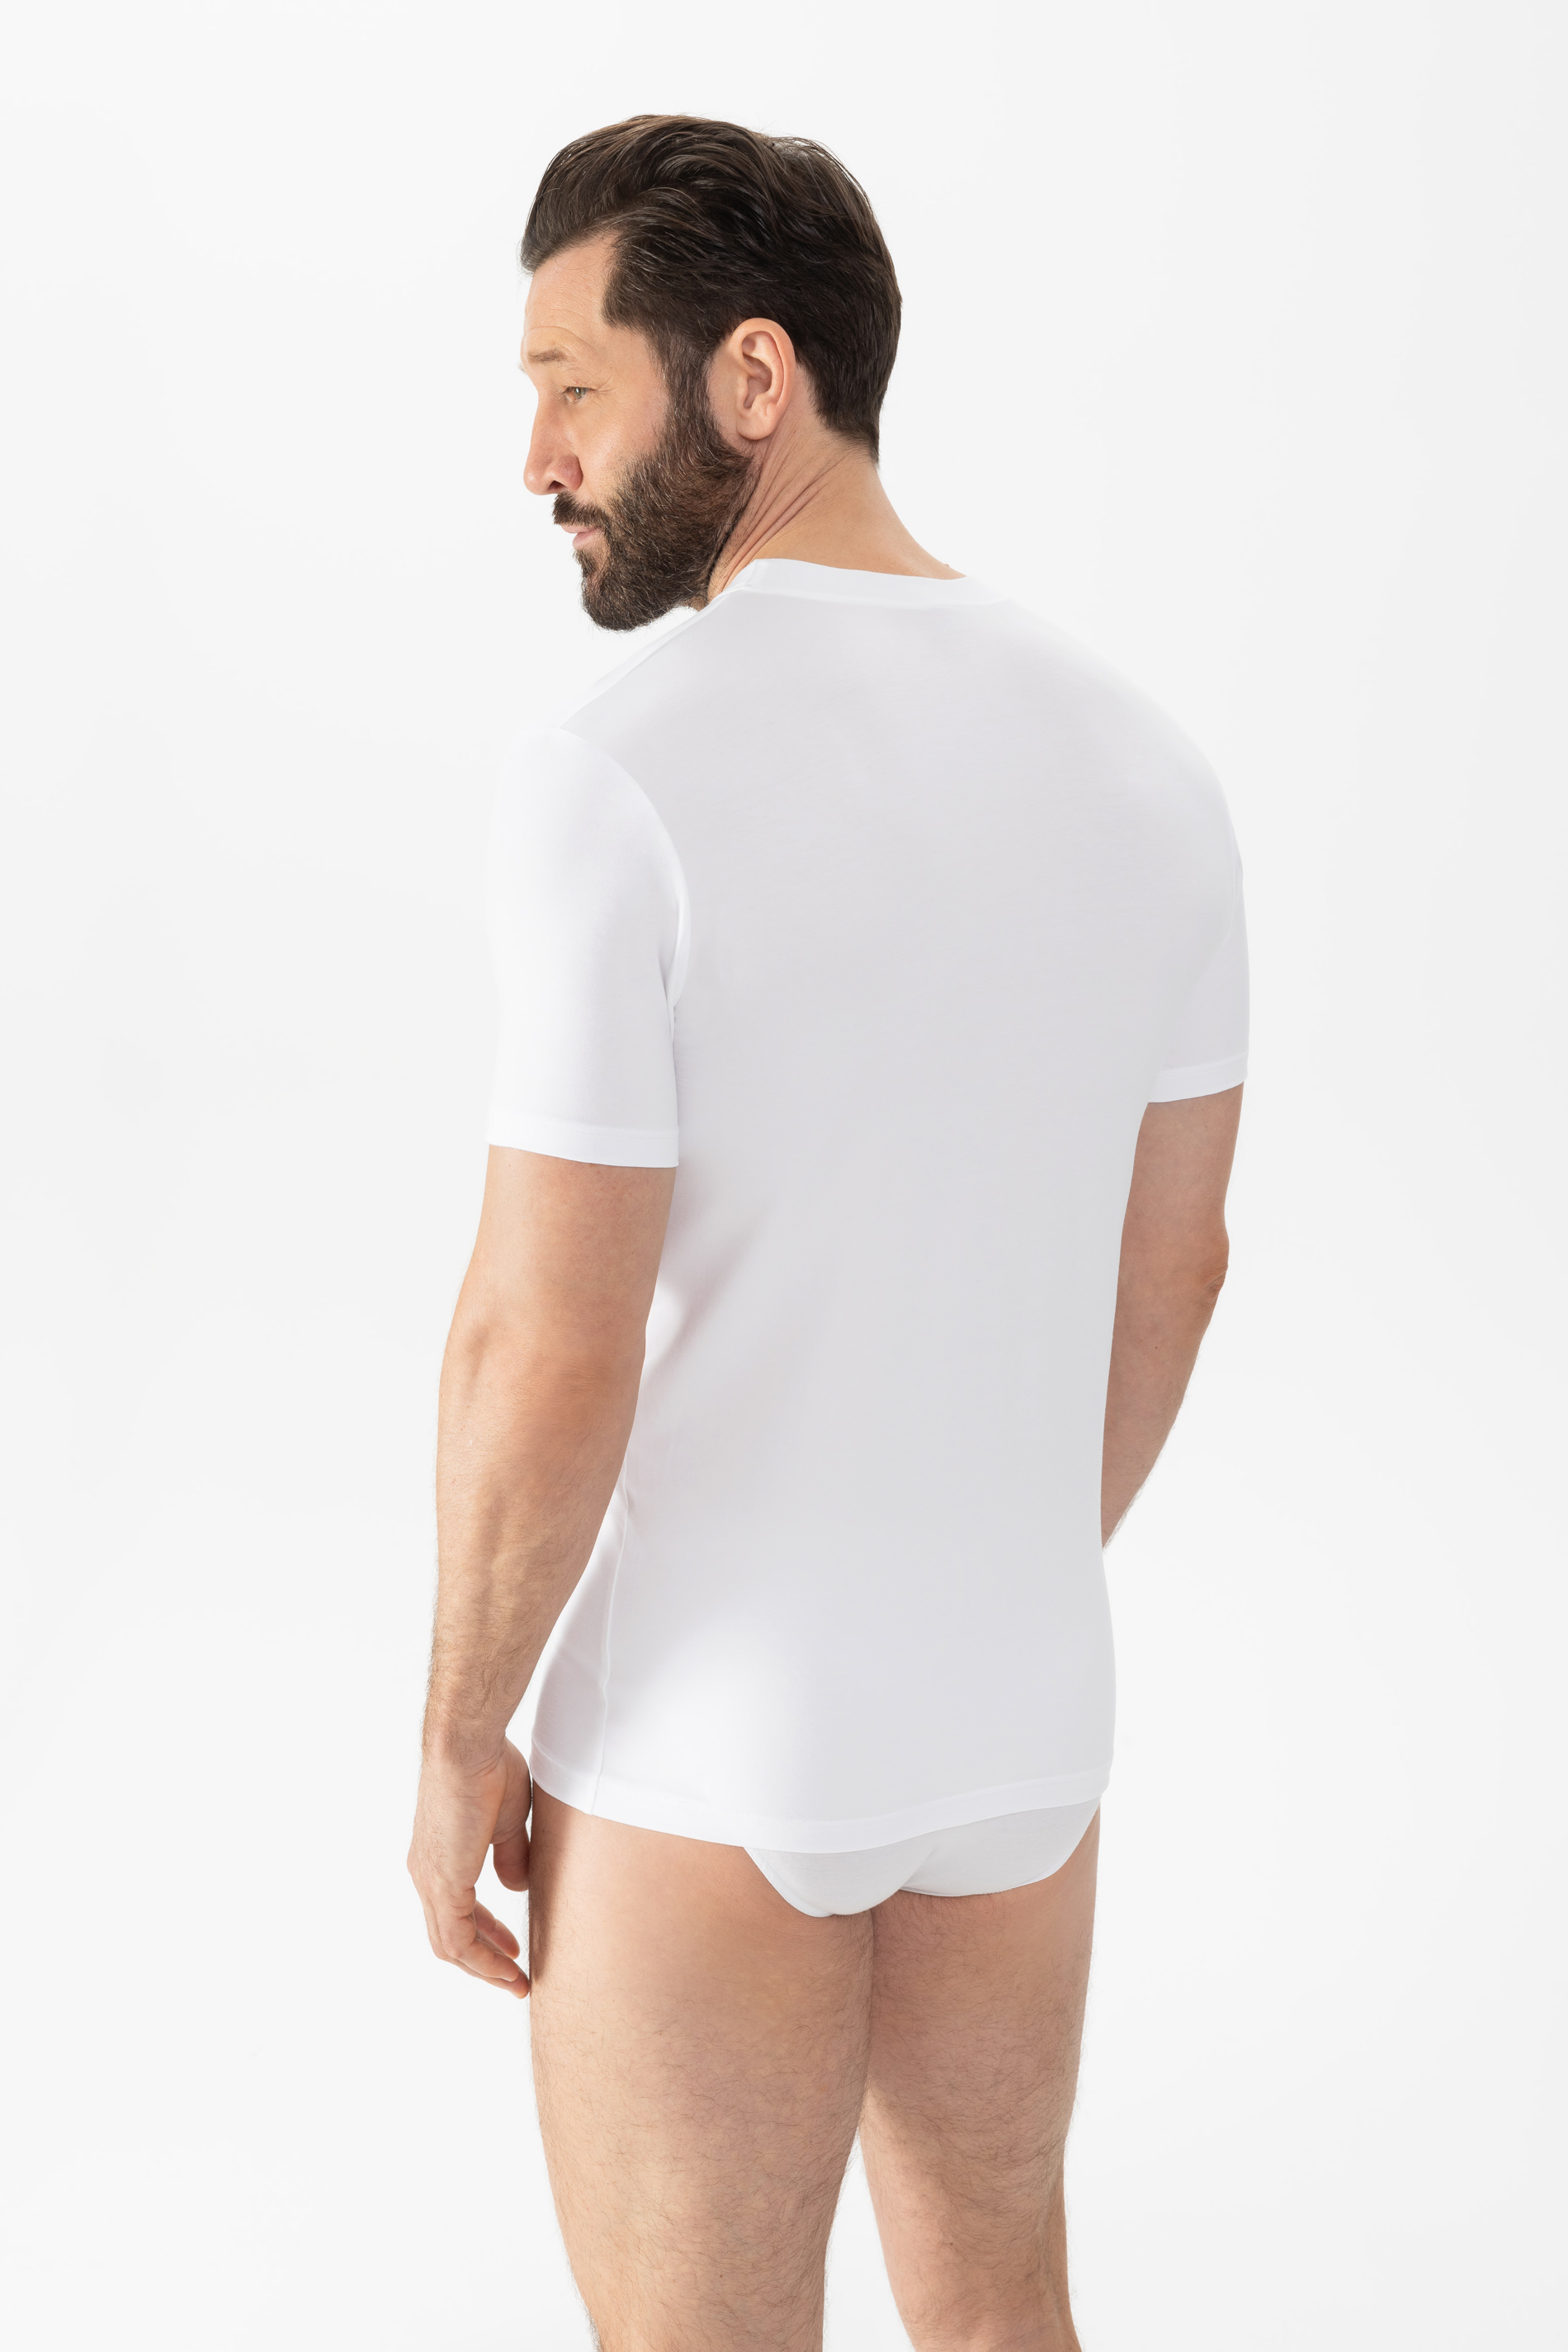 Shirt Weiss Serie Dry Cotton Rückansicht | mey®